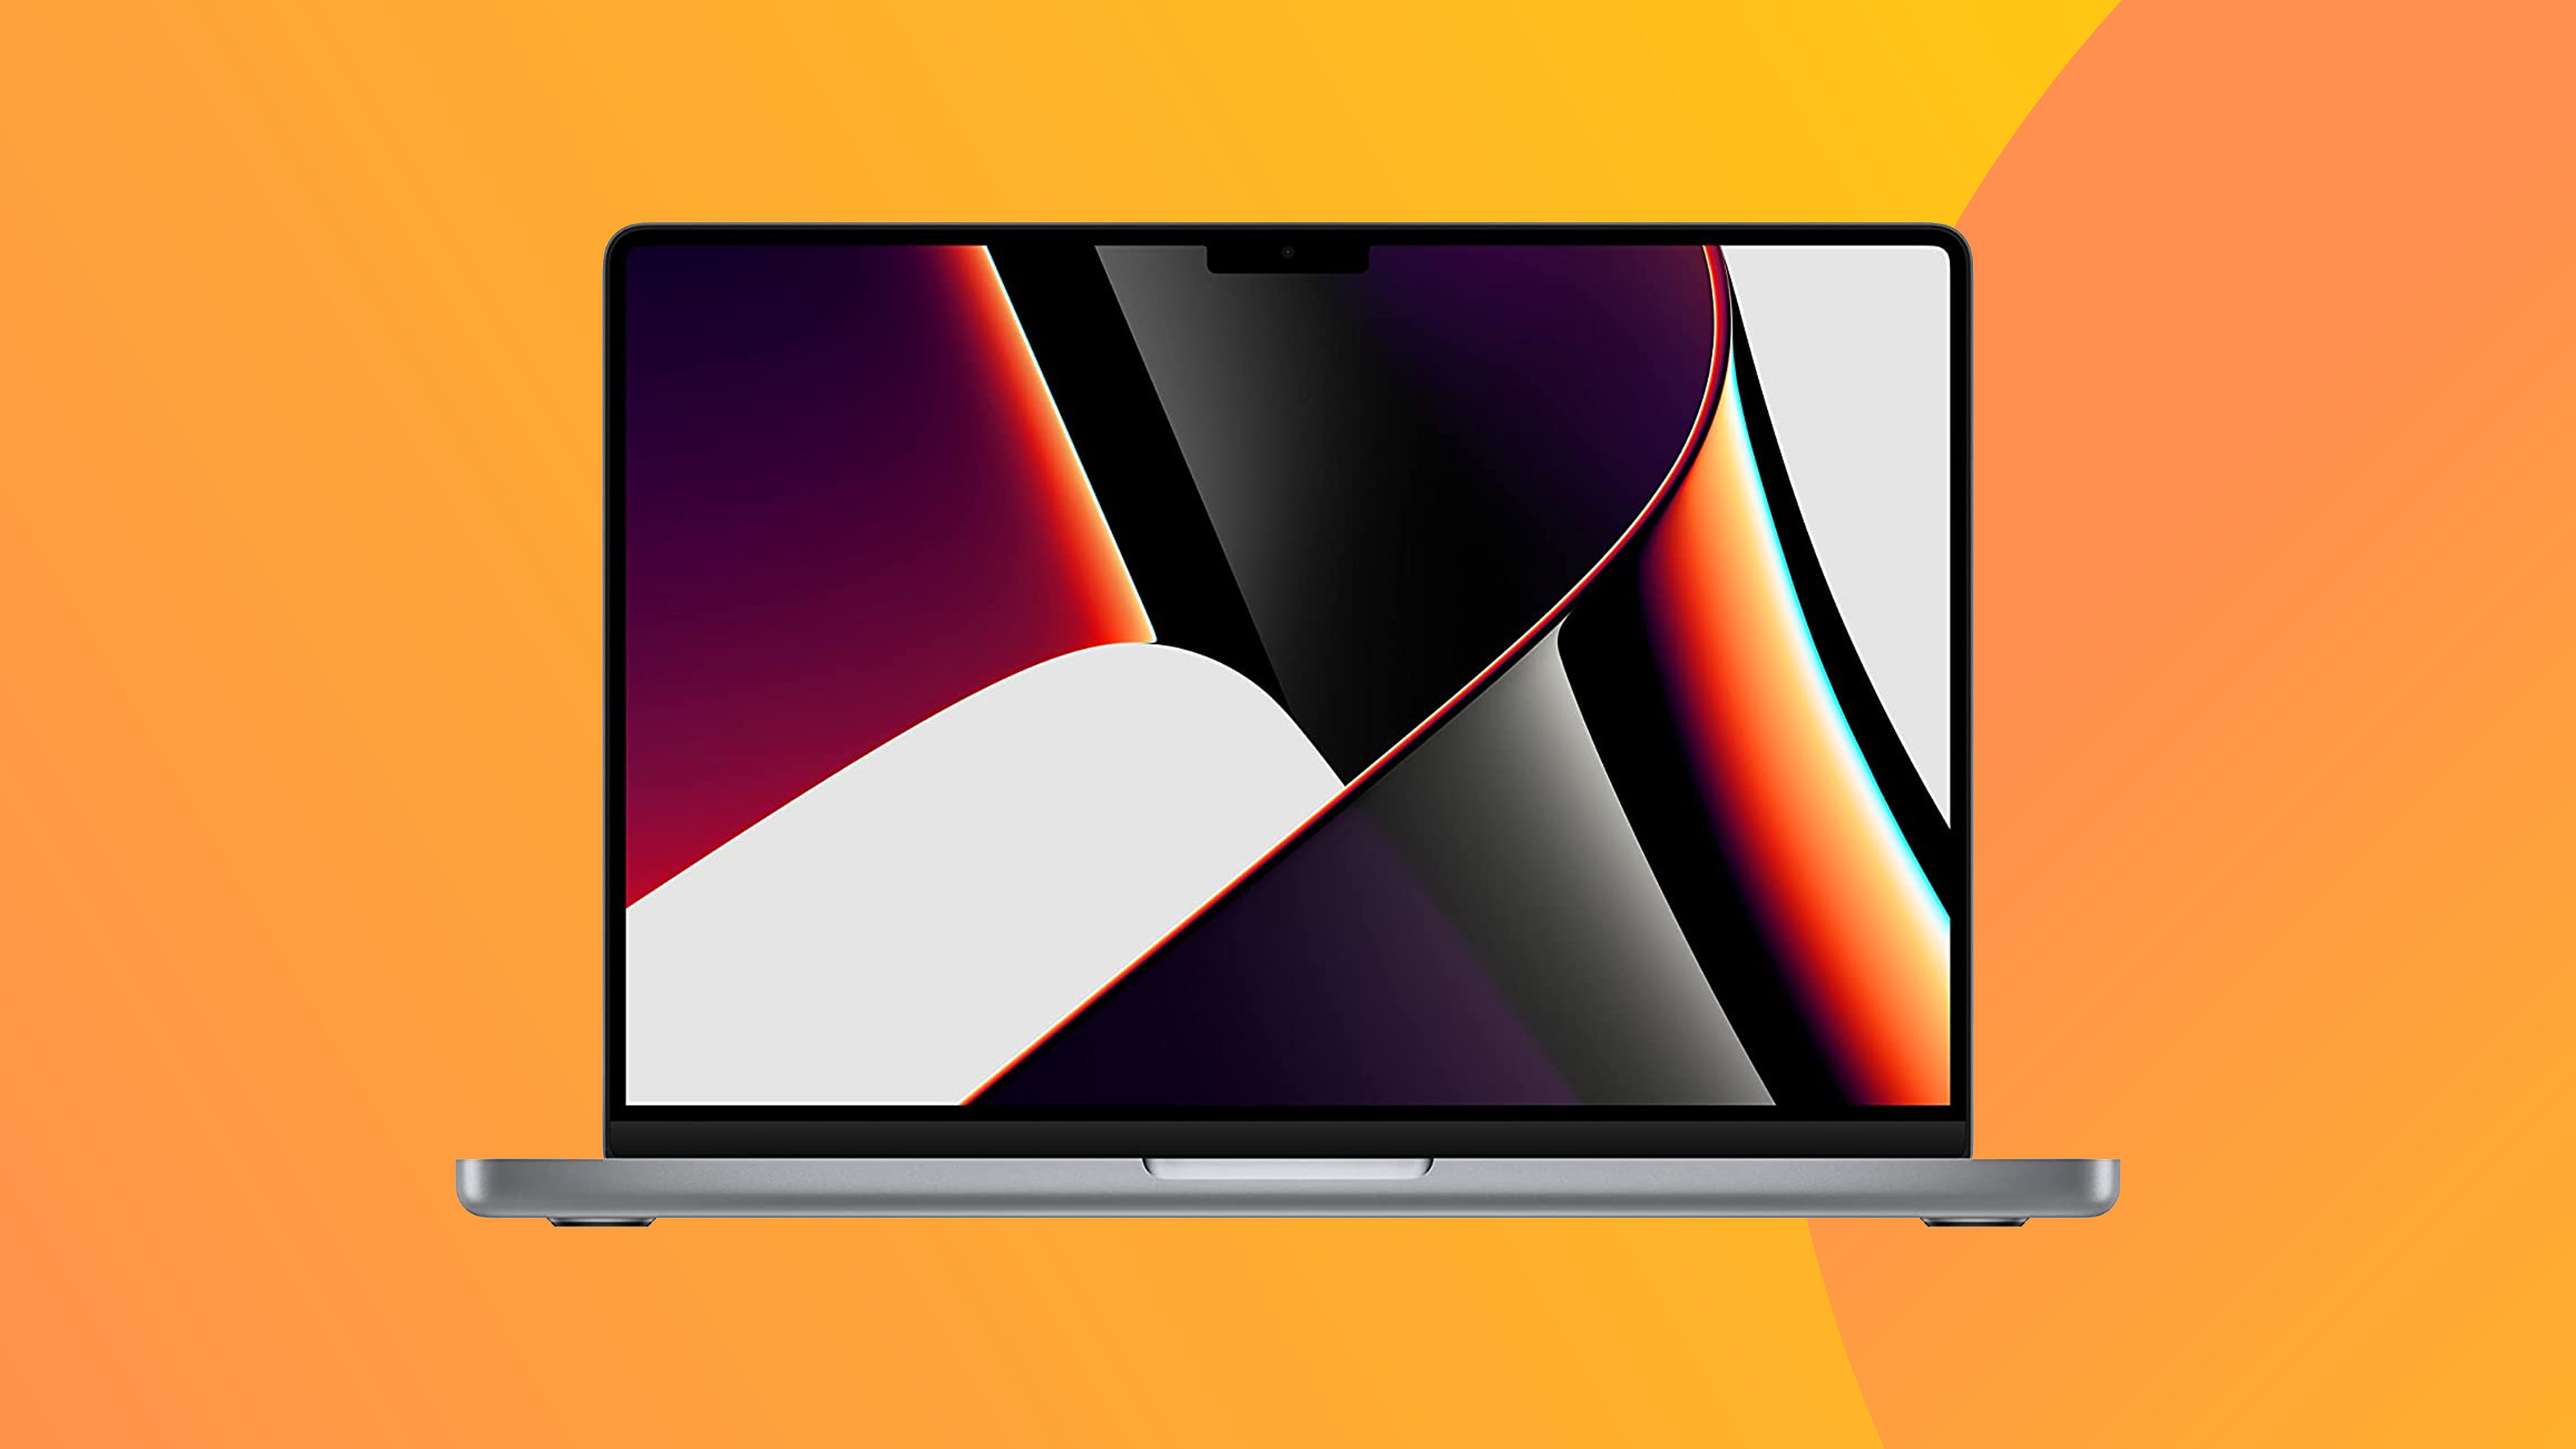 Produktfoto des MacBook Pro 2021 auf farbigem Hintergrund